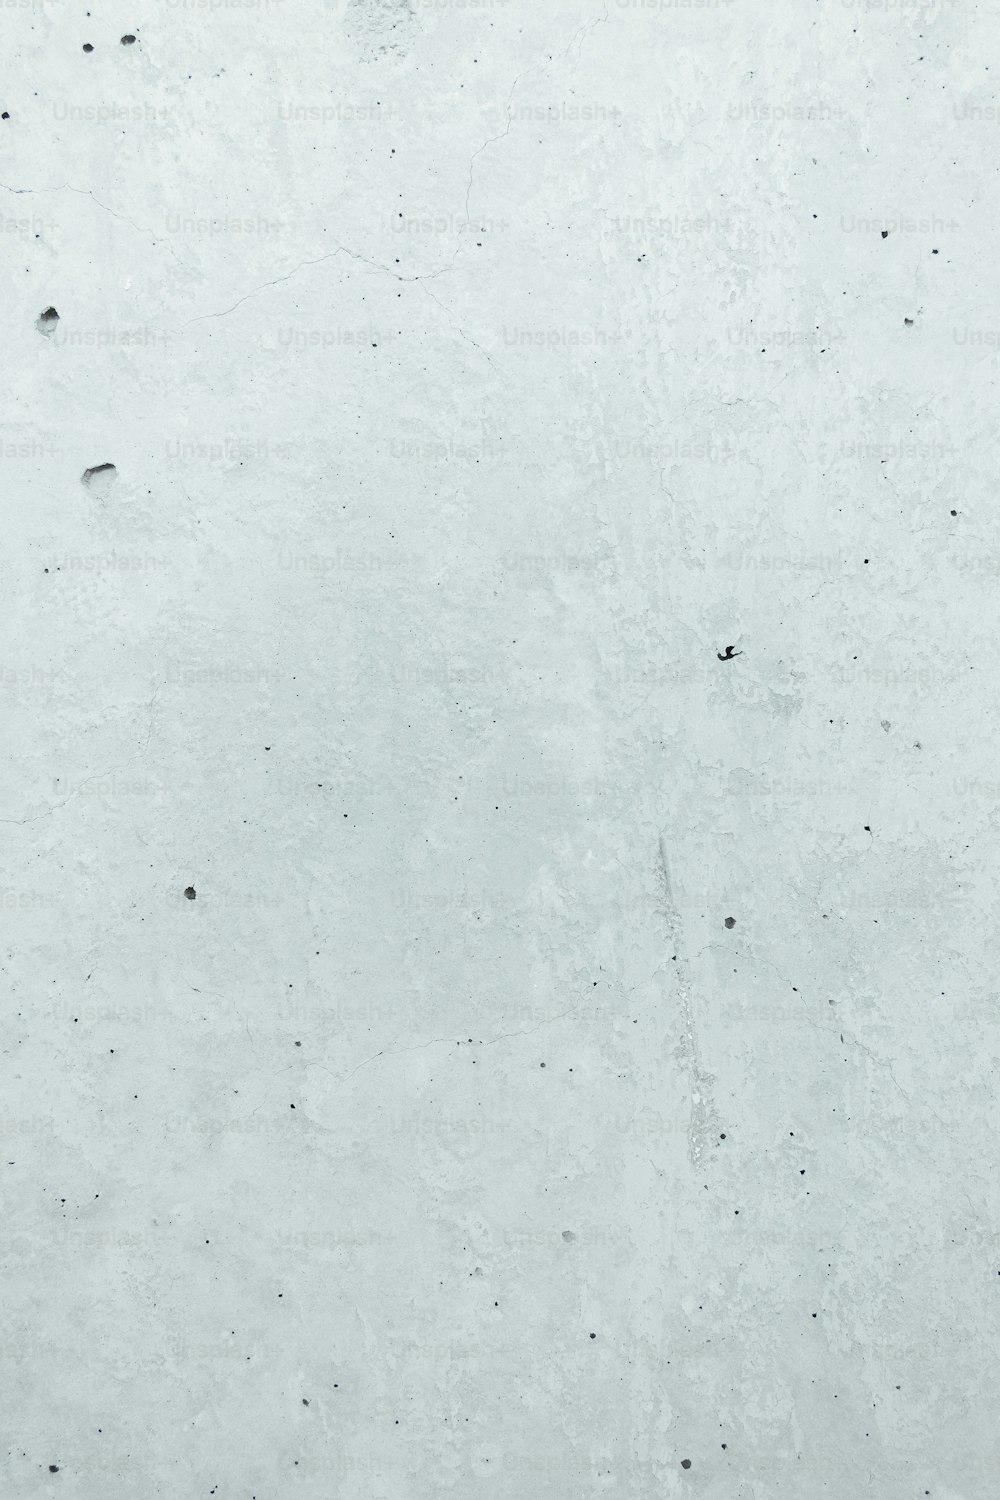 ein Schwarz-Weiß-Foto einer Person auf einem Snowboard